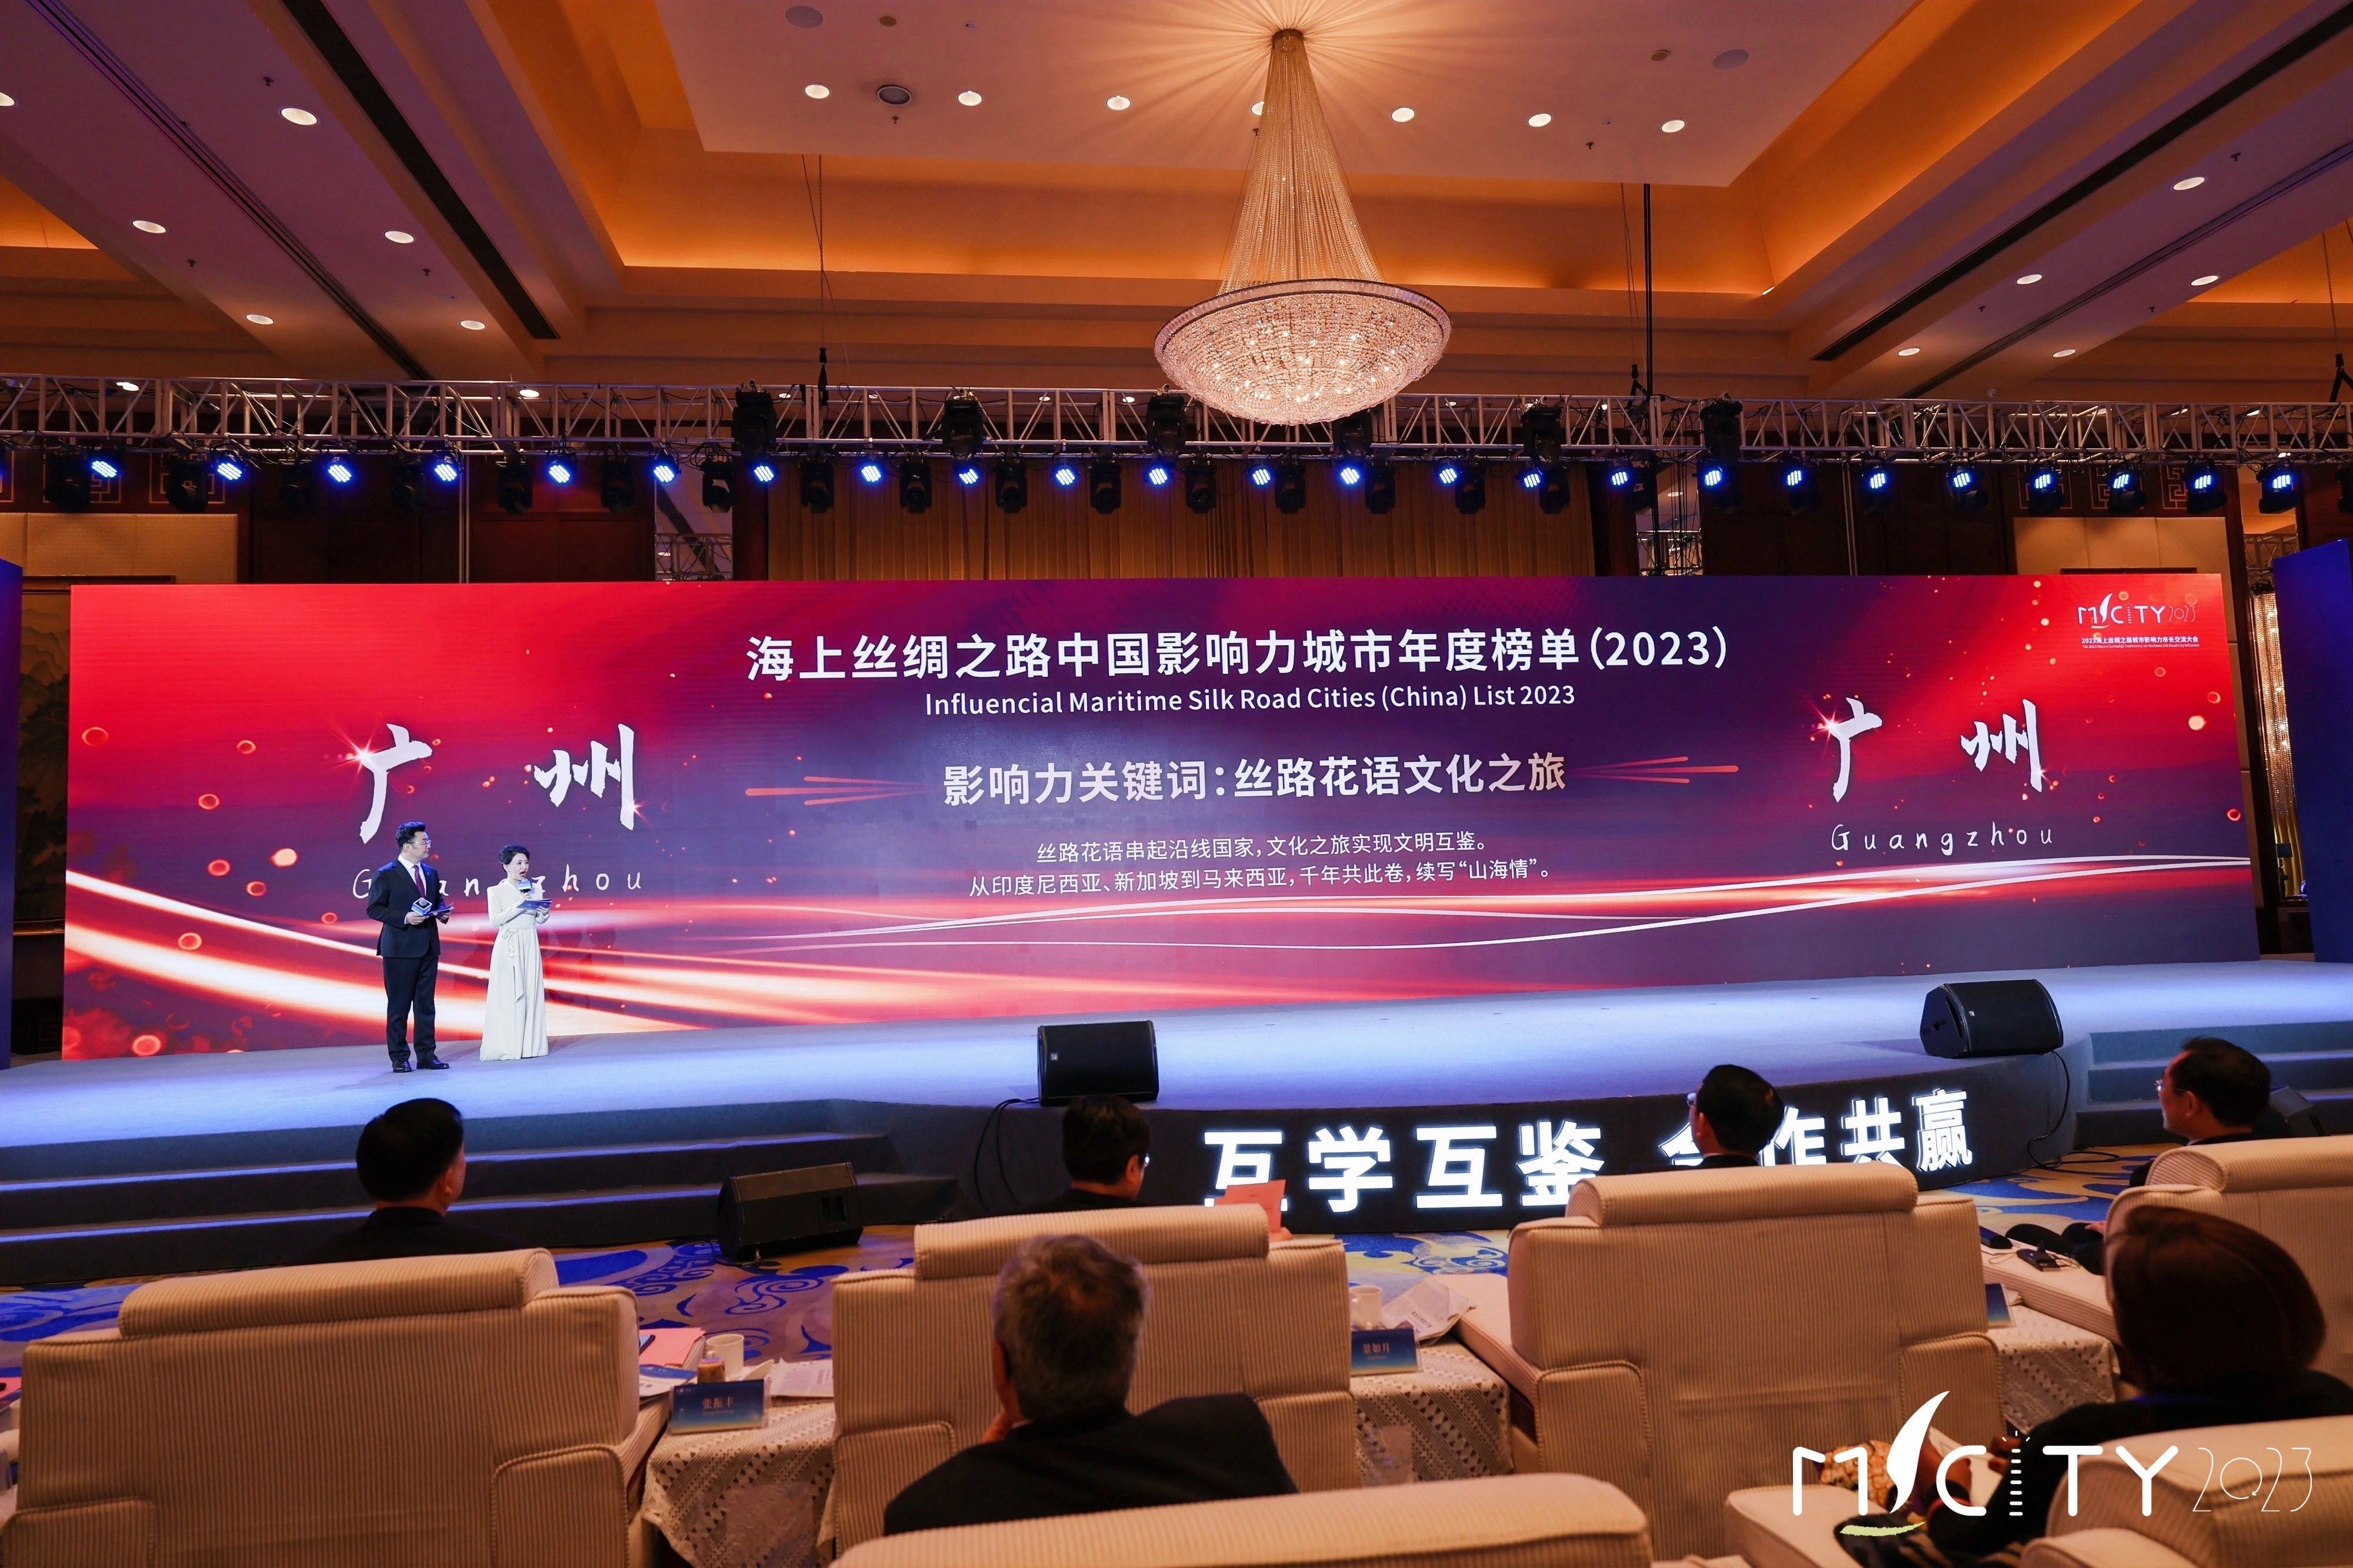 11月26日-2023年海上丝绸之路影响力城市年度榜单发布，广州荣耀上榜02.jpg